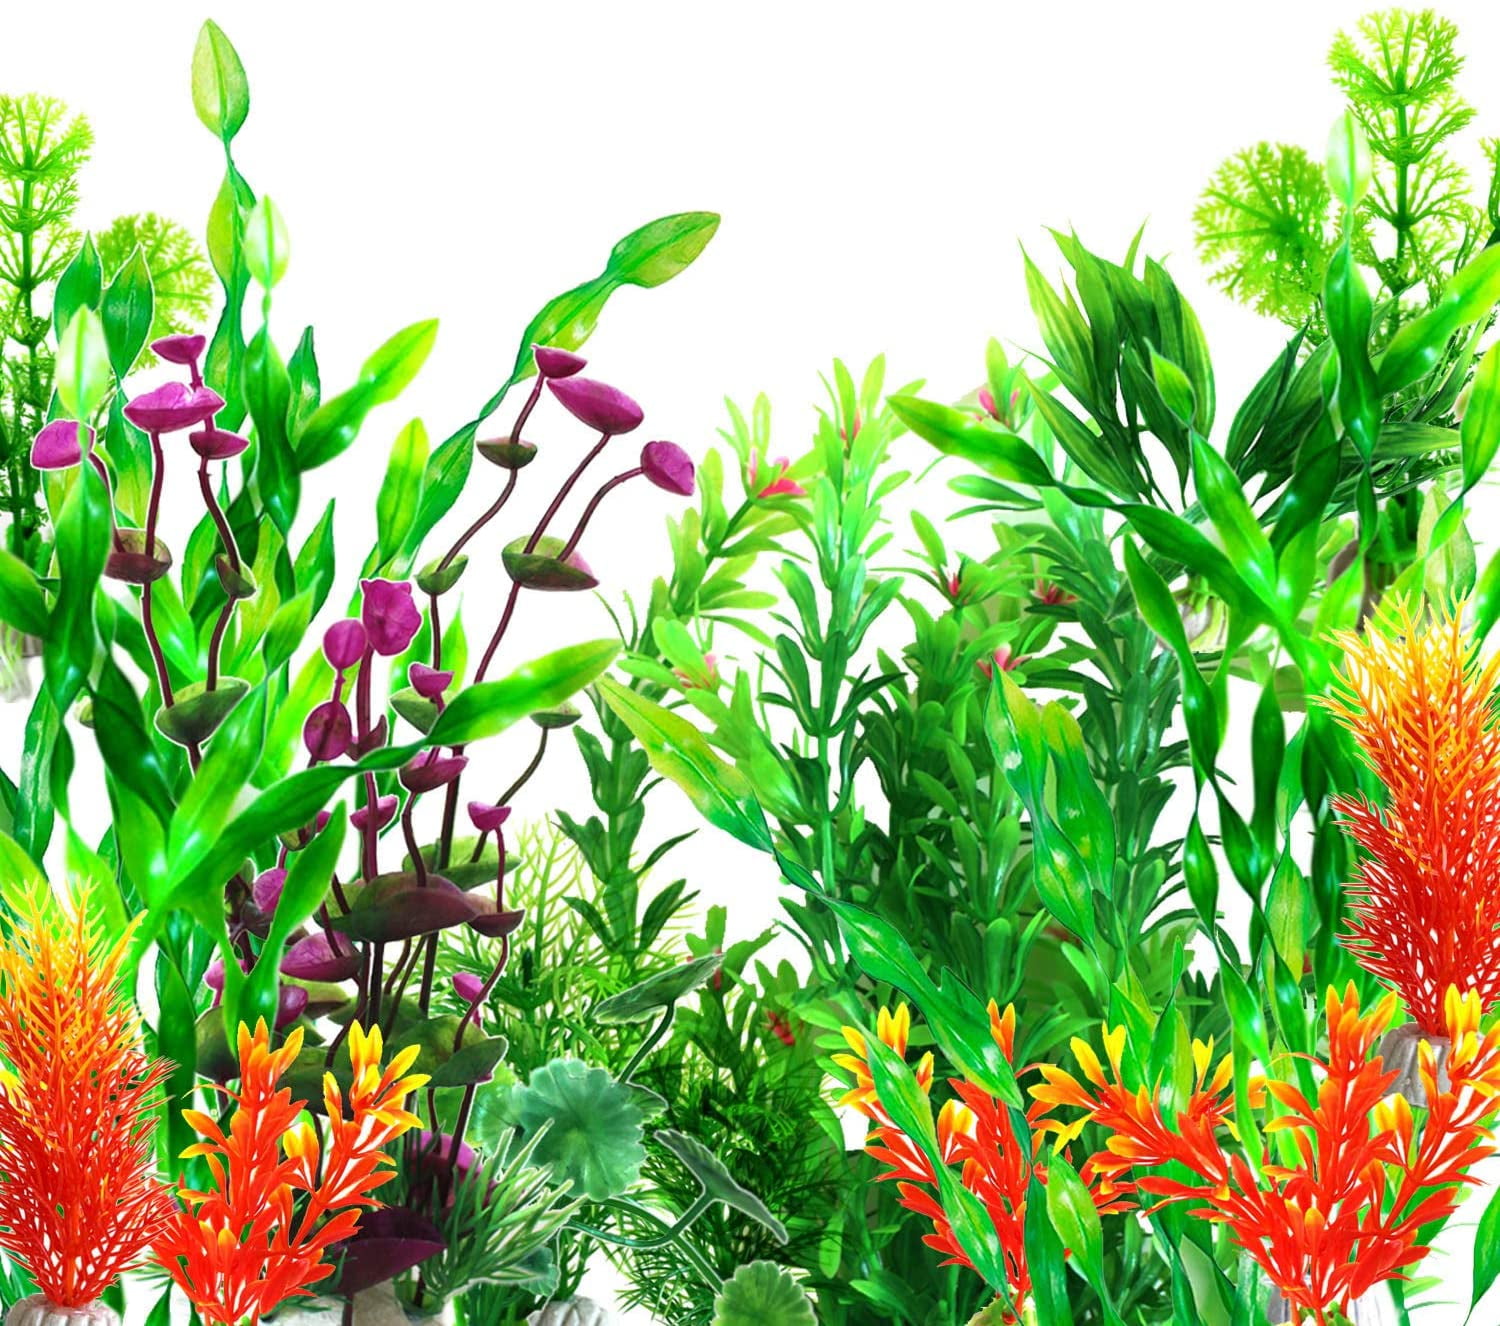 Saim 10 Pcs Aquarium Artificial Plastic Plants Set Decor Fish Tank Ornament Green 12 Long 